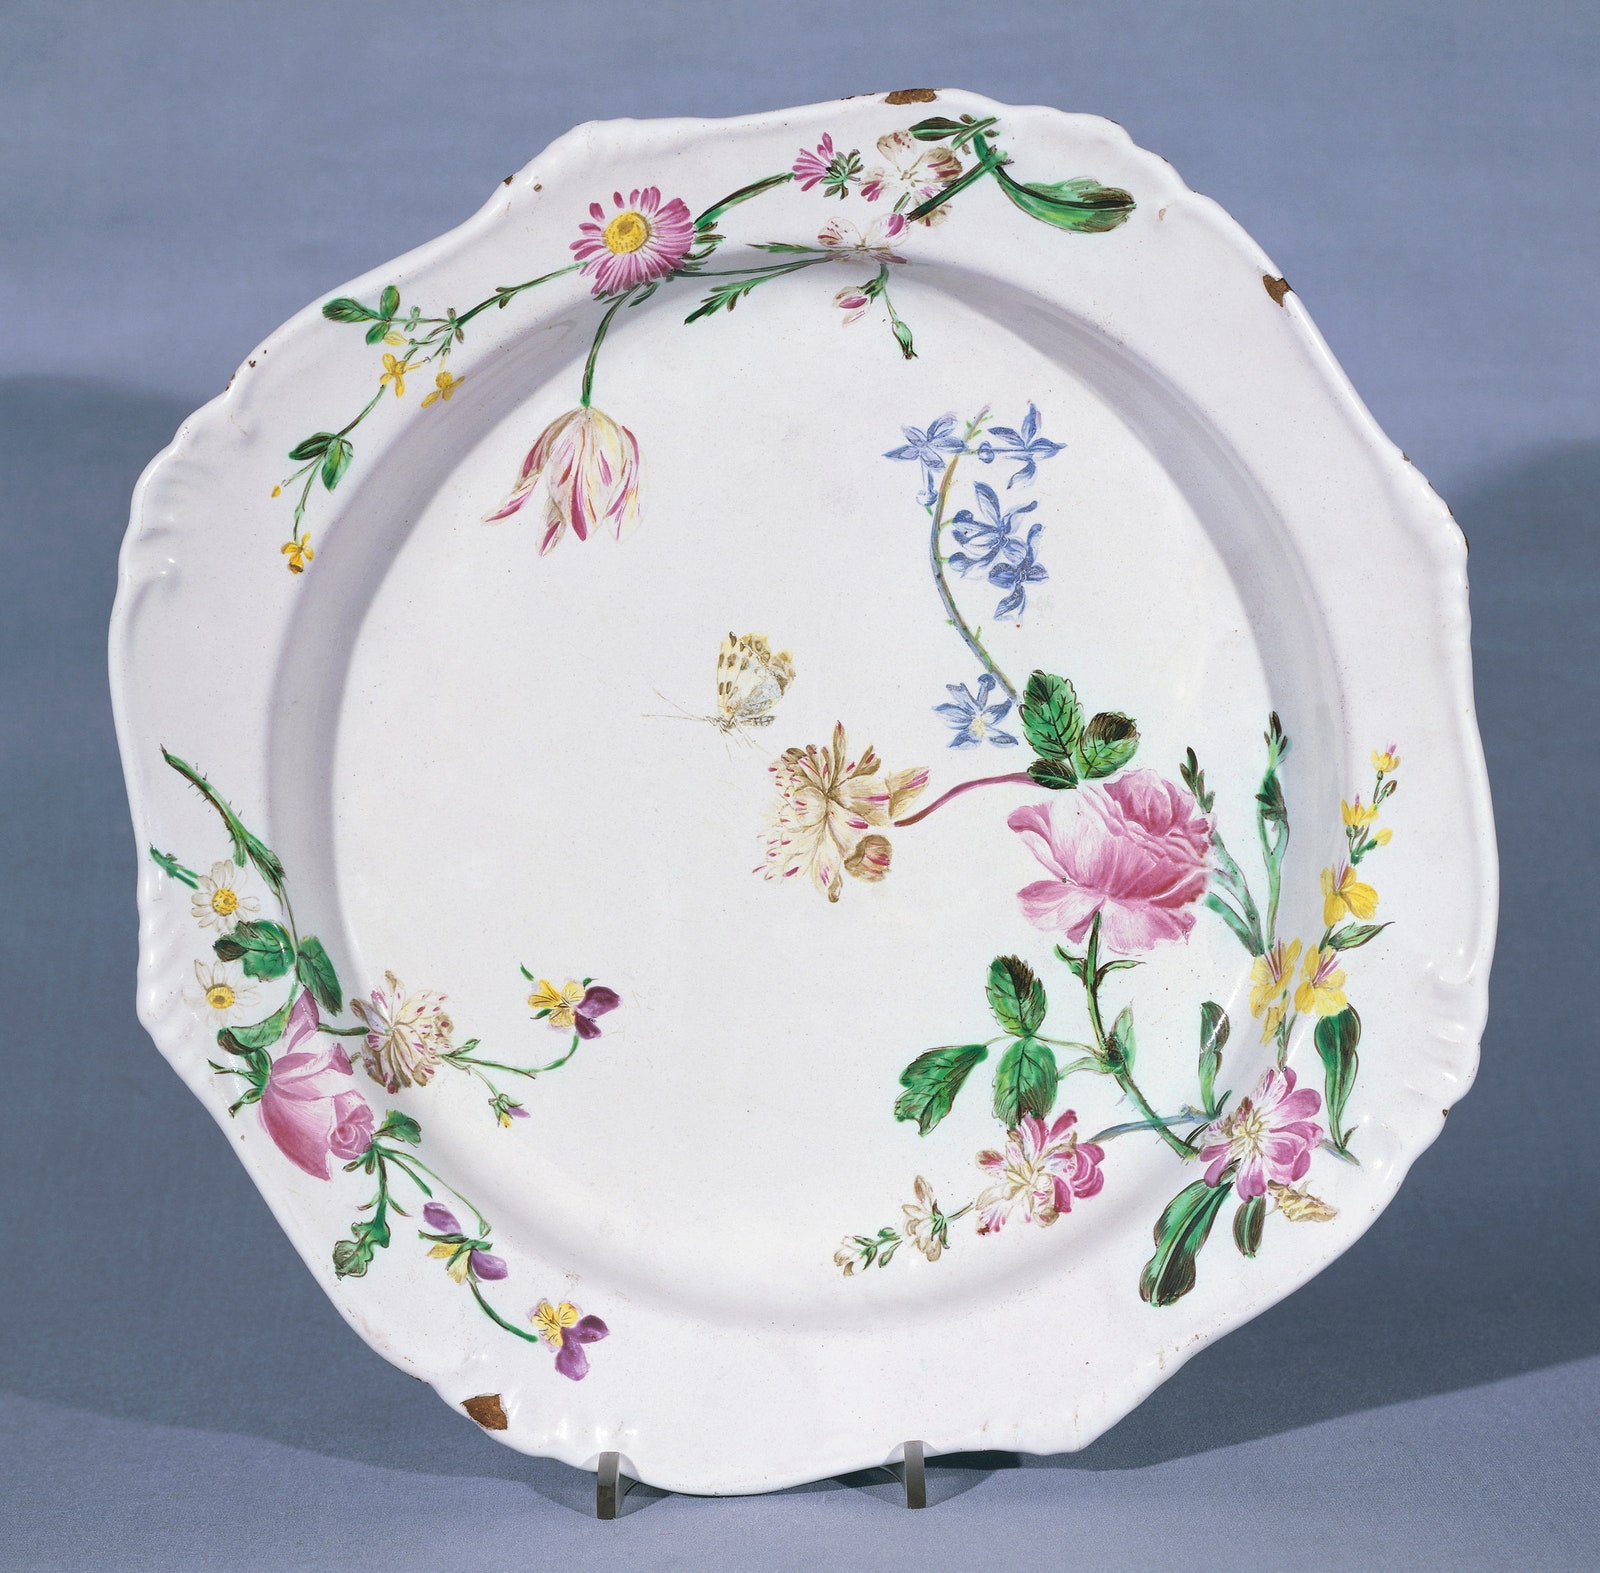 Тарелка расписанная цветочным рисунком 17601770 керамика Мануфактура Veuve Perrin Марсель Прованс — Альпы — Лазурный...